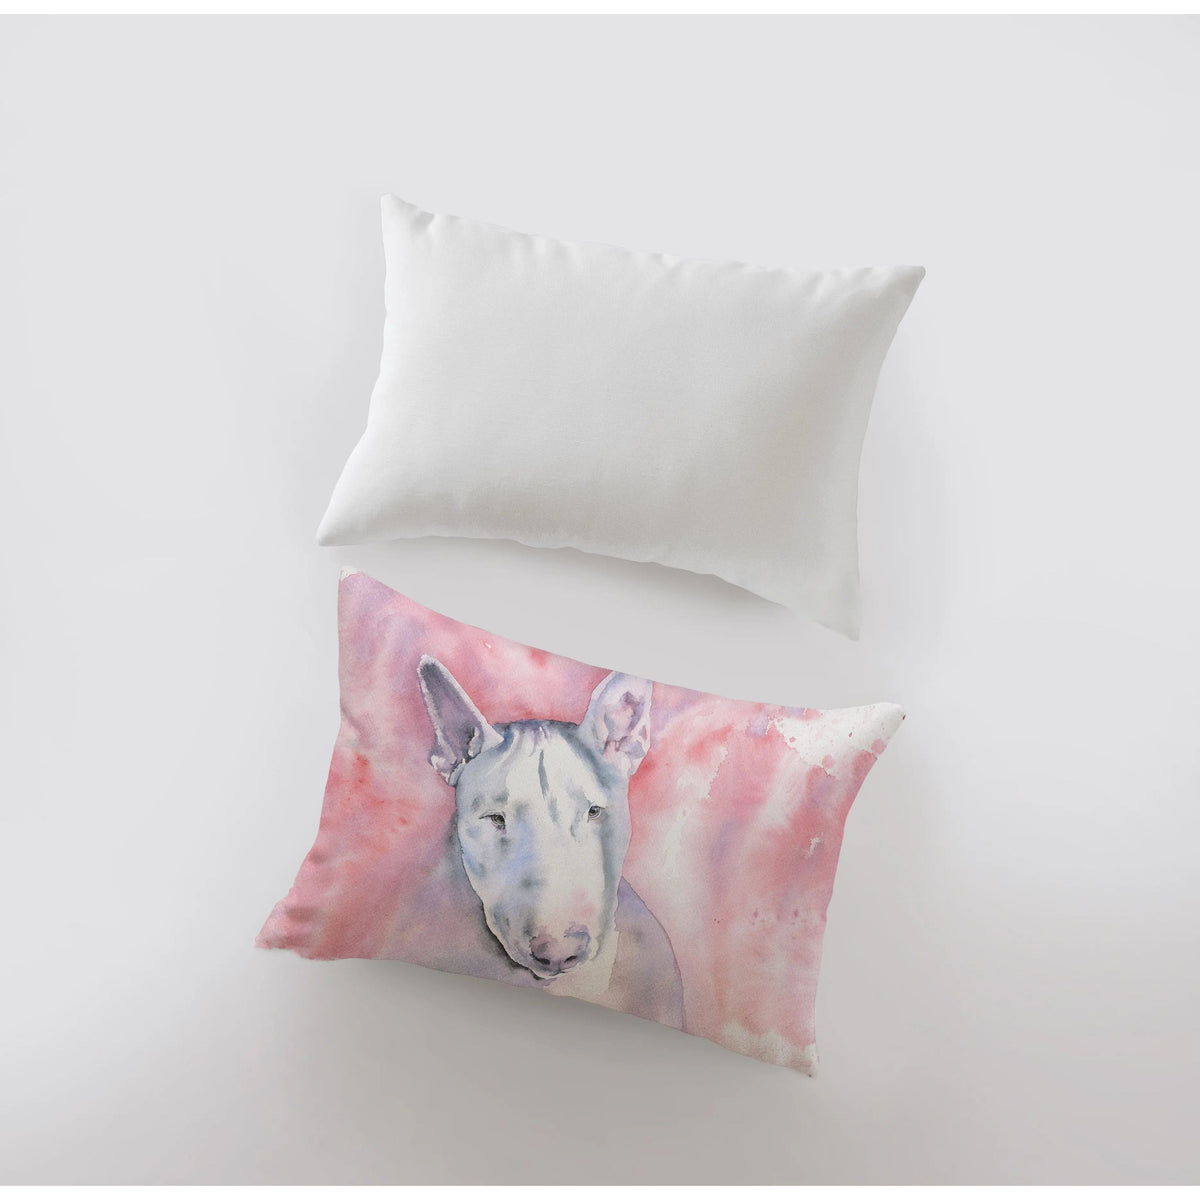 Bull Terrier | 18x12 Pillow | Pillow Cover